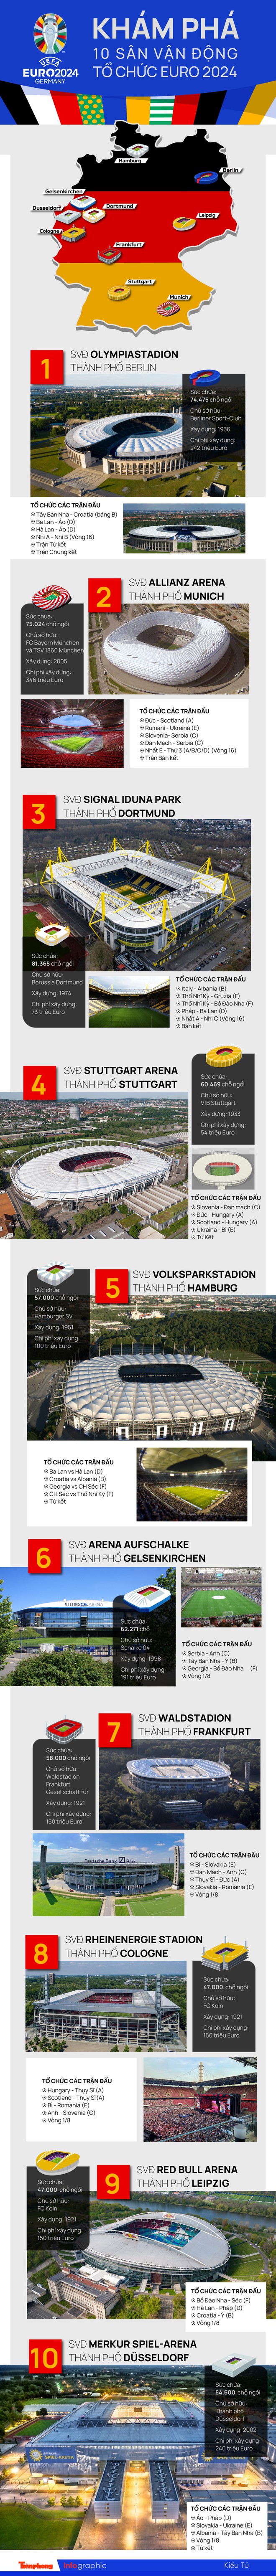 Khám phá 10 sân vận động tổ chức EURO 2024 - Ảnh 1.